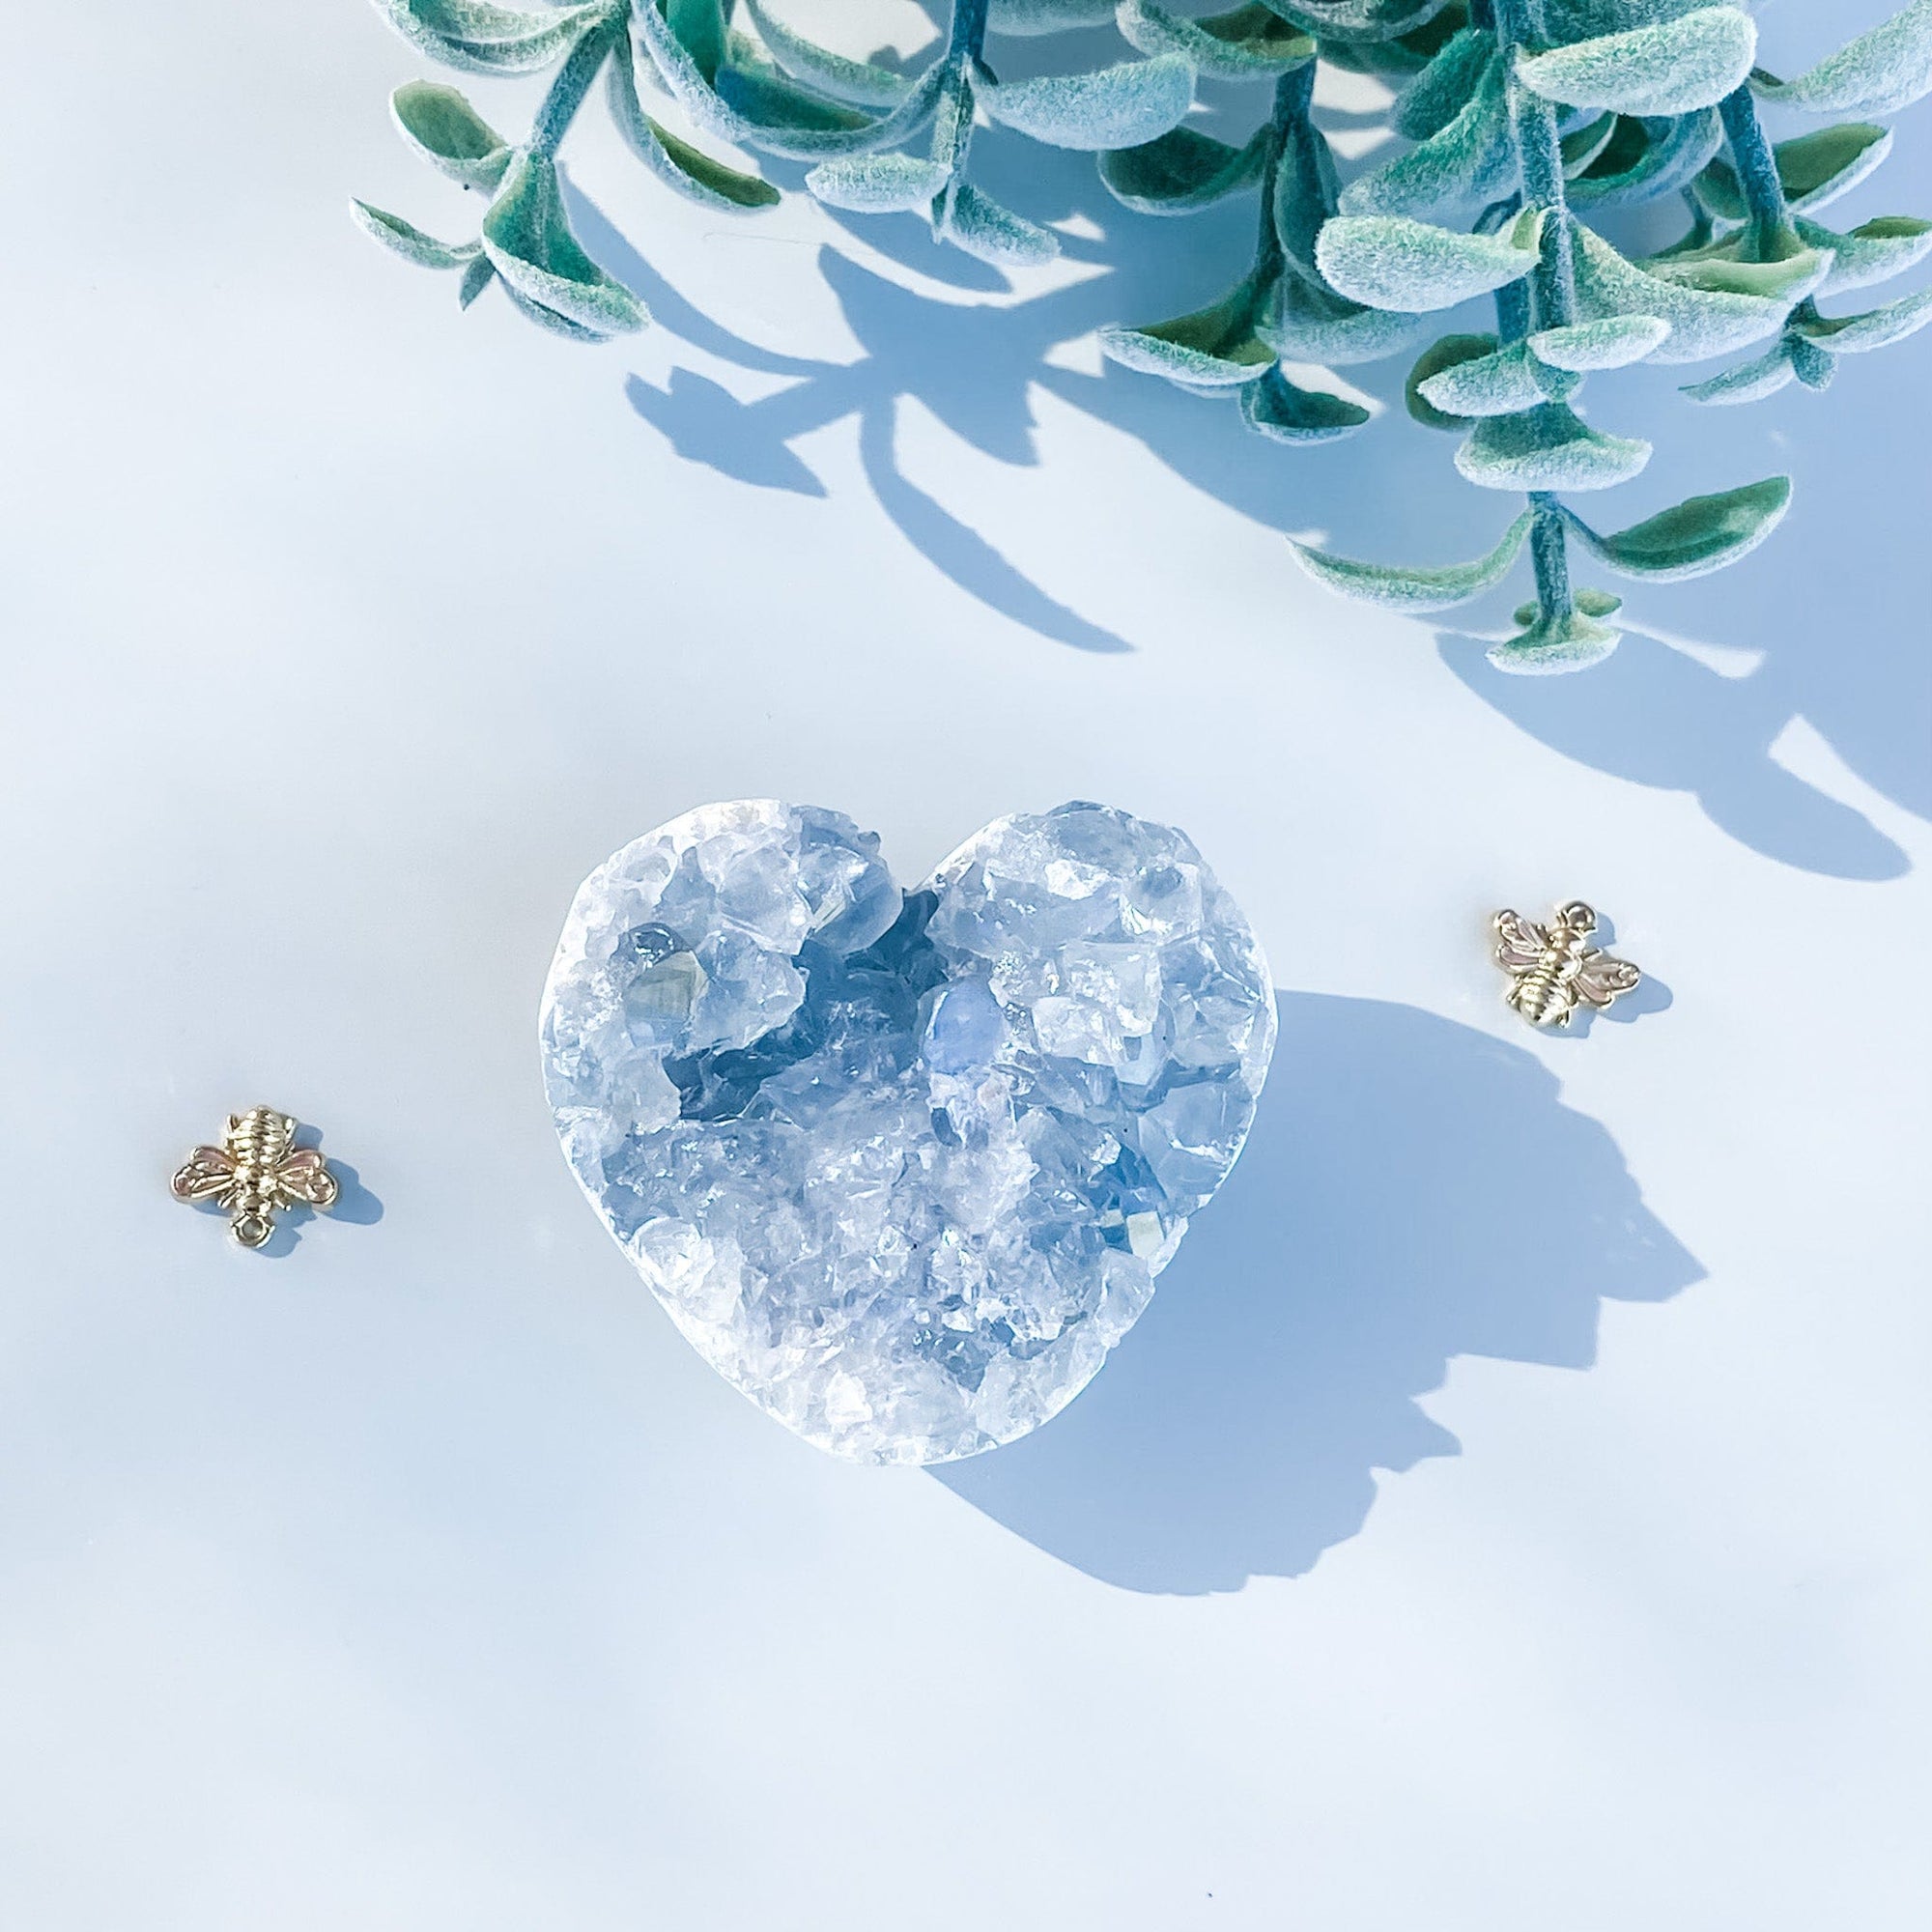 S1667 Celestite crystal geode heart shaped cluster 5cm Australia. Buy celestite crystal australia. gemrox sydney 1